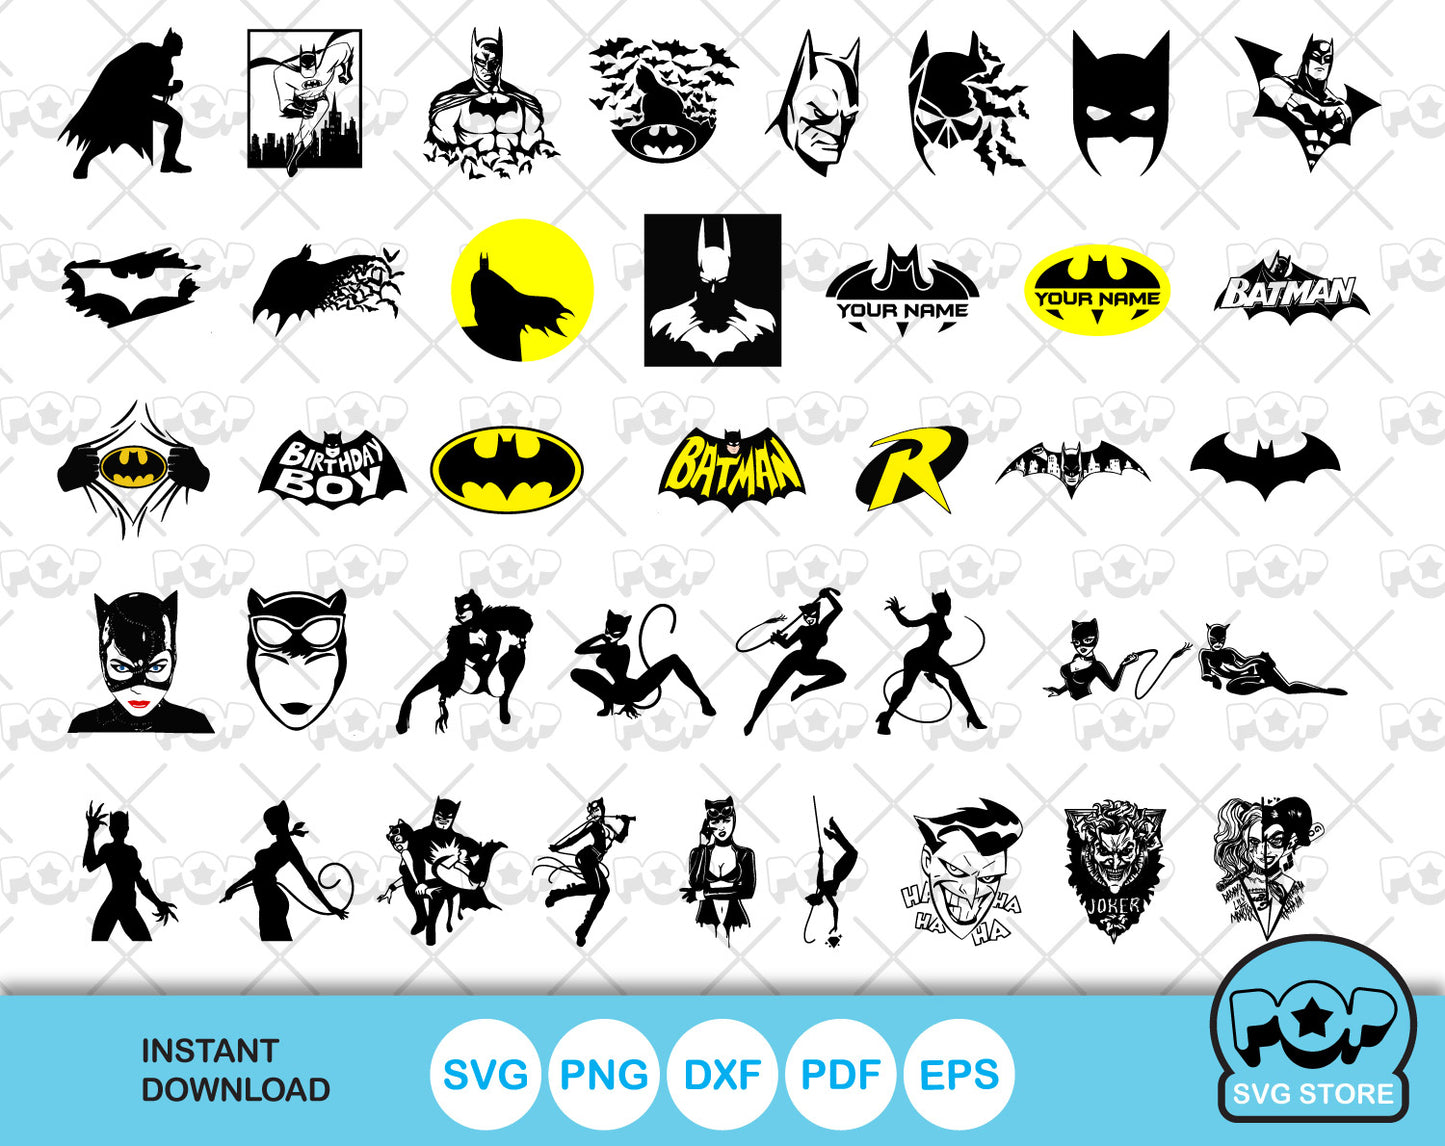 Batman 100 cliparts bundle, Batman SVG cut files for Cricut / Silhouette, PNG, DXF, instant download